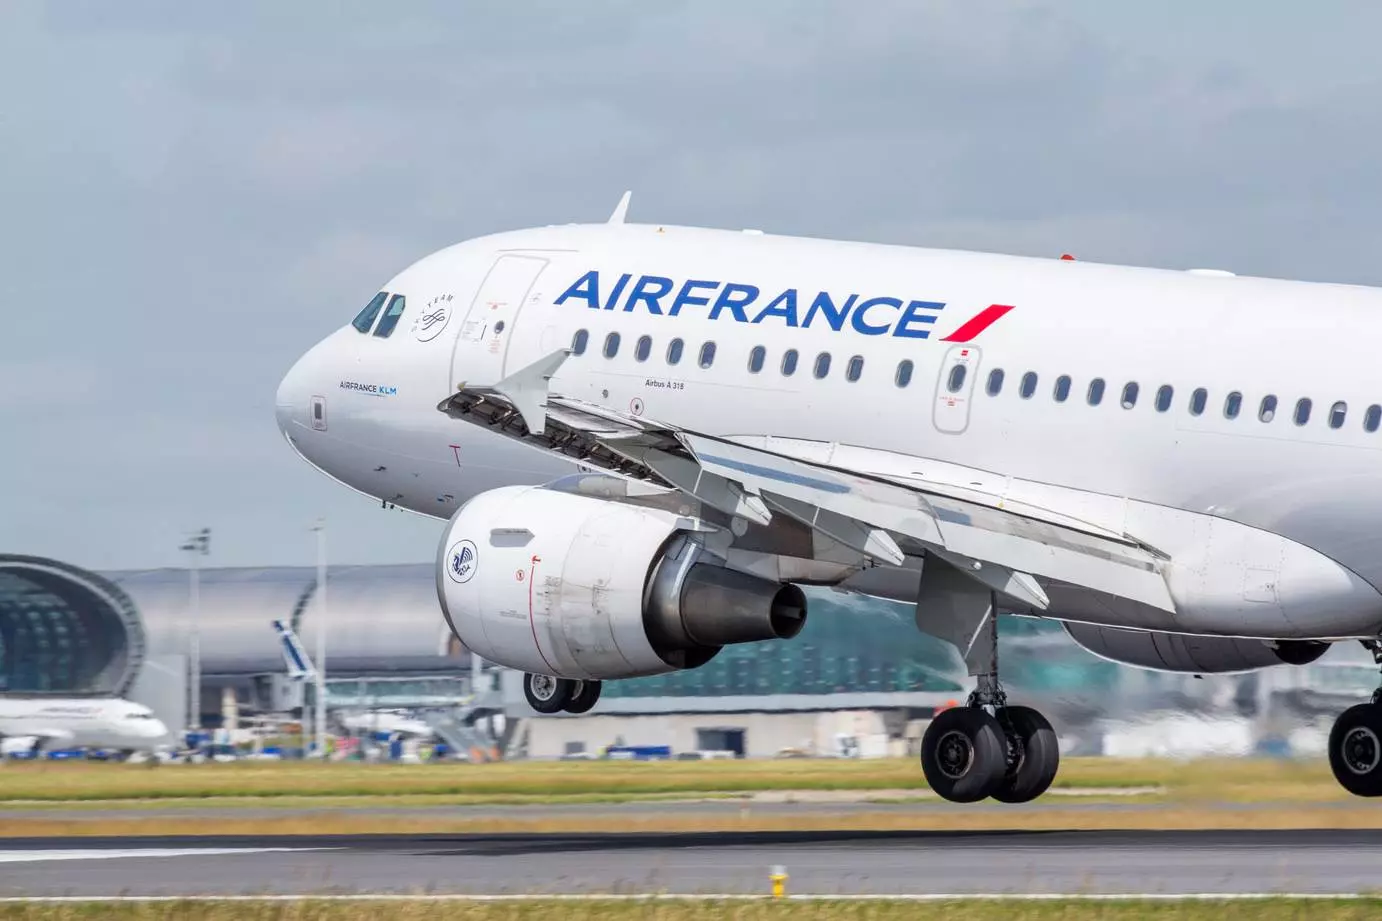 Эйр франс авиакомпания - официальный сайт air france, контакты, авиабилеты и расписание рейсов французские авиалинии 2022